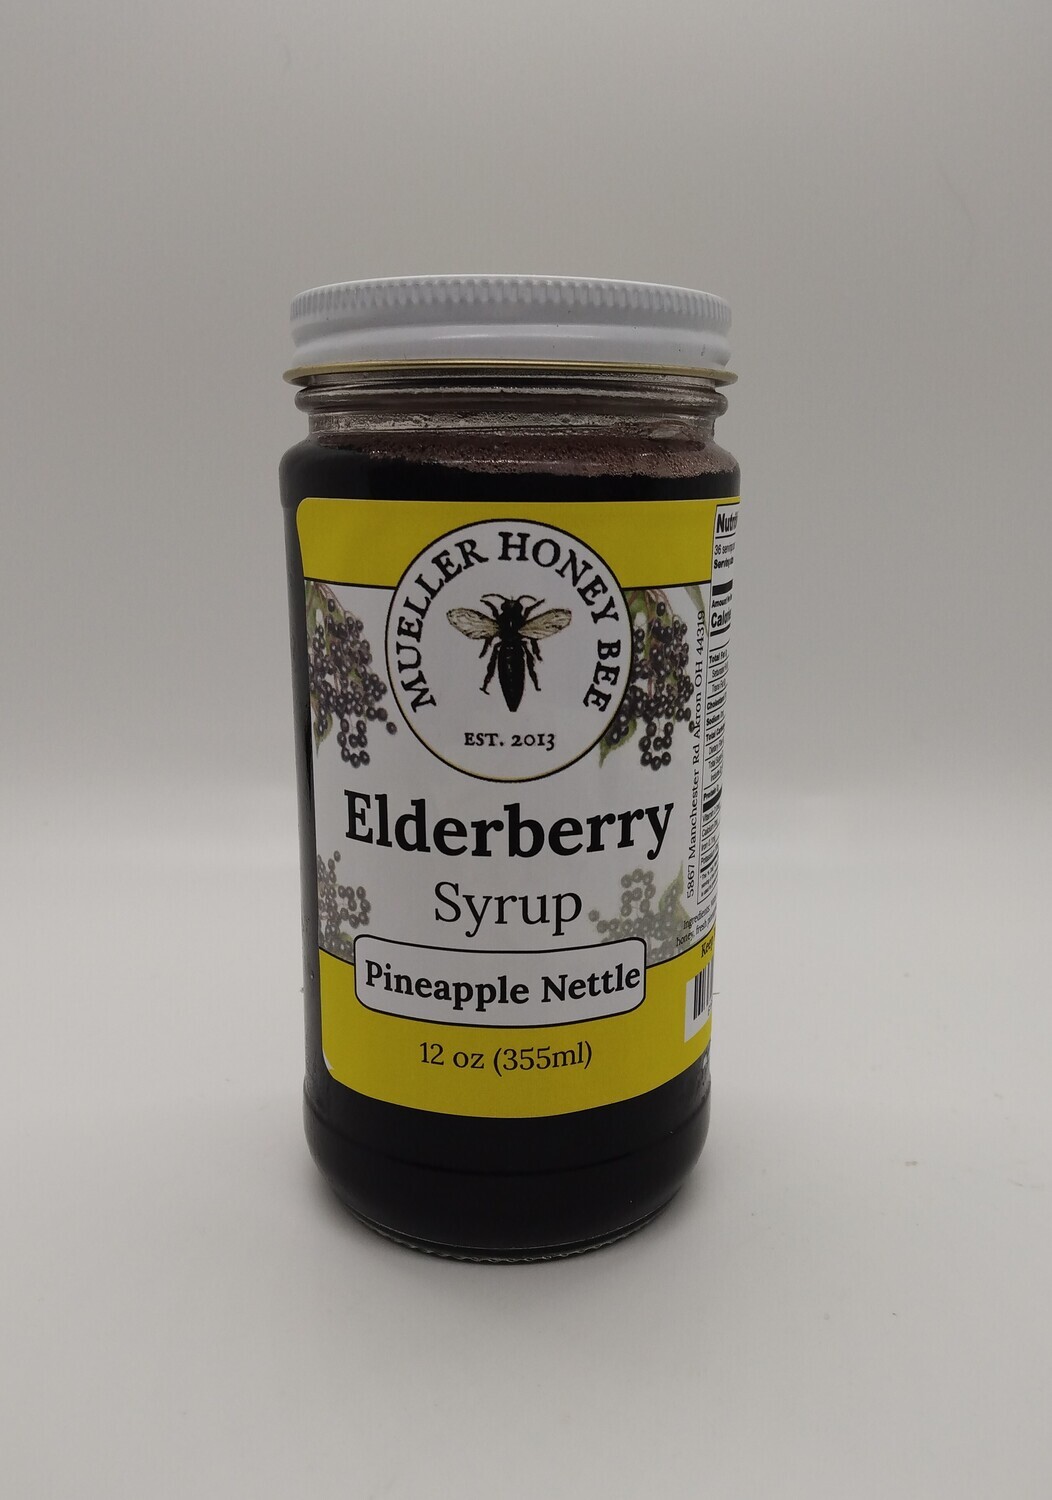 3 pack - 12 oz Pineapple Nettle Elderberry Syrup